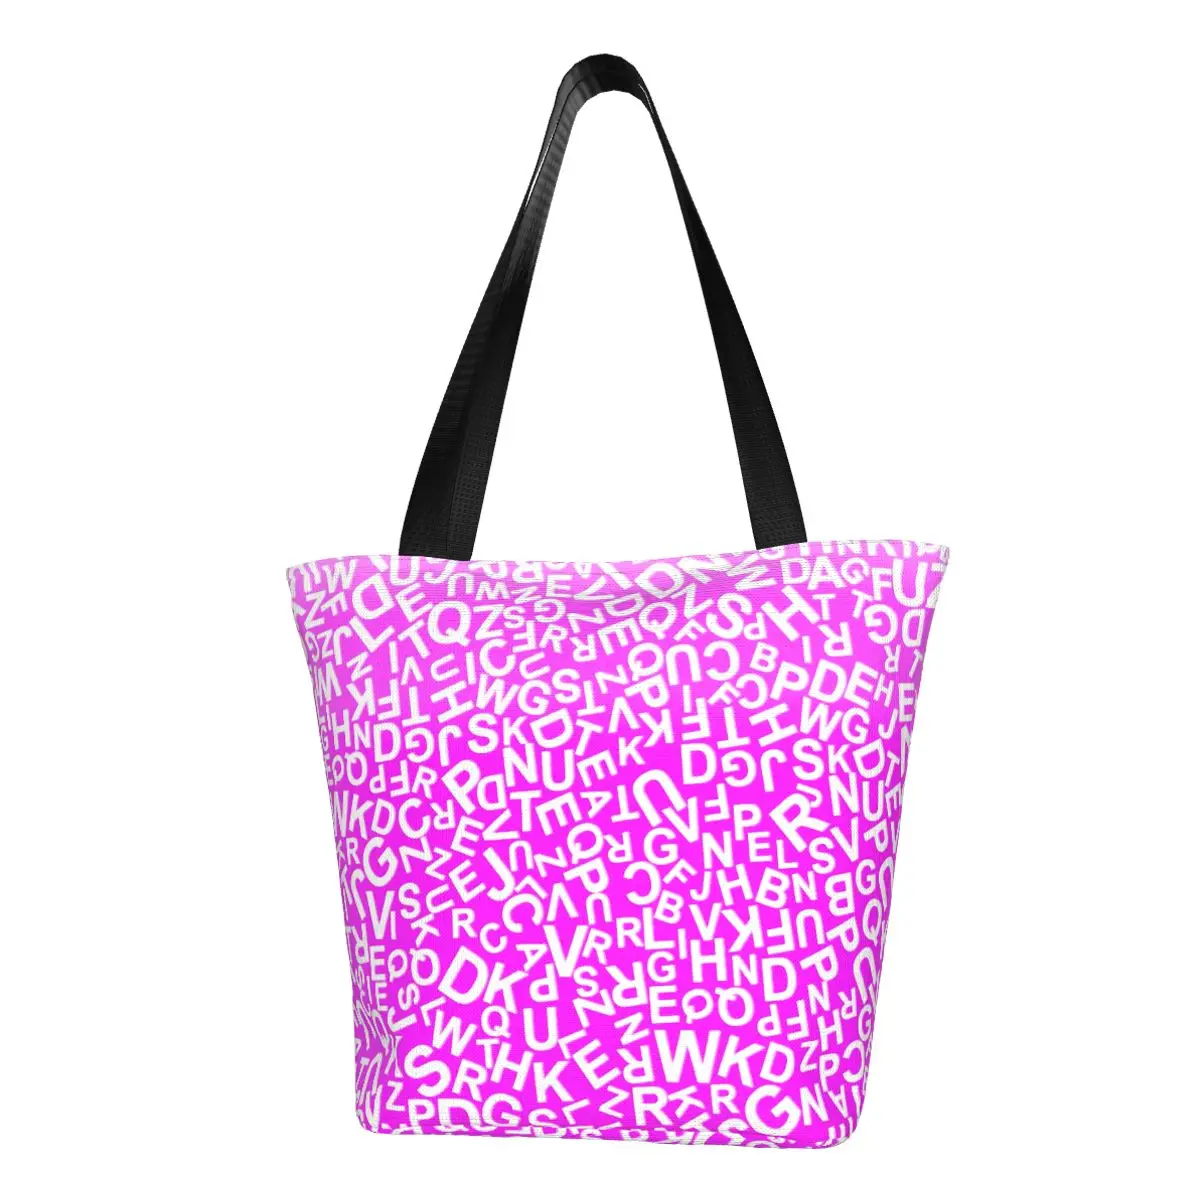 

Сумка-шоппер с буквами алфавита, женская розовая сумка-тоут с градиентным принтом, Офисная Ретро сумка на плечо из полиэстера